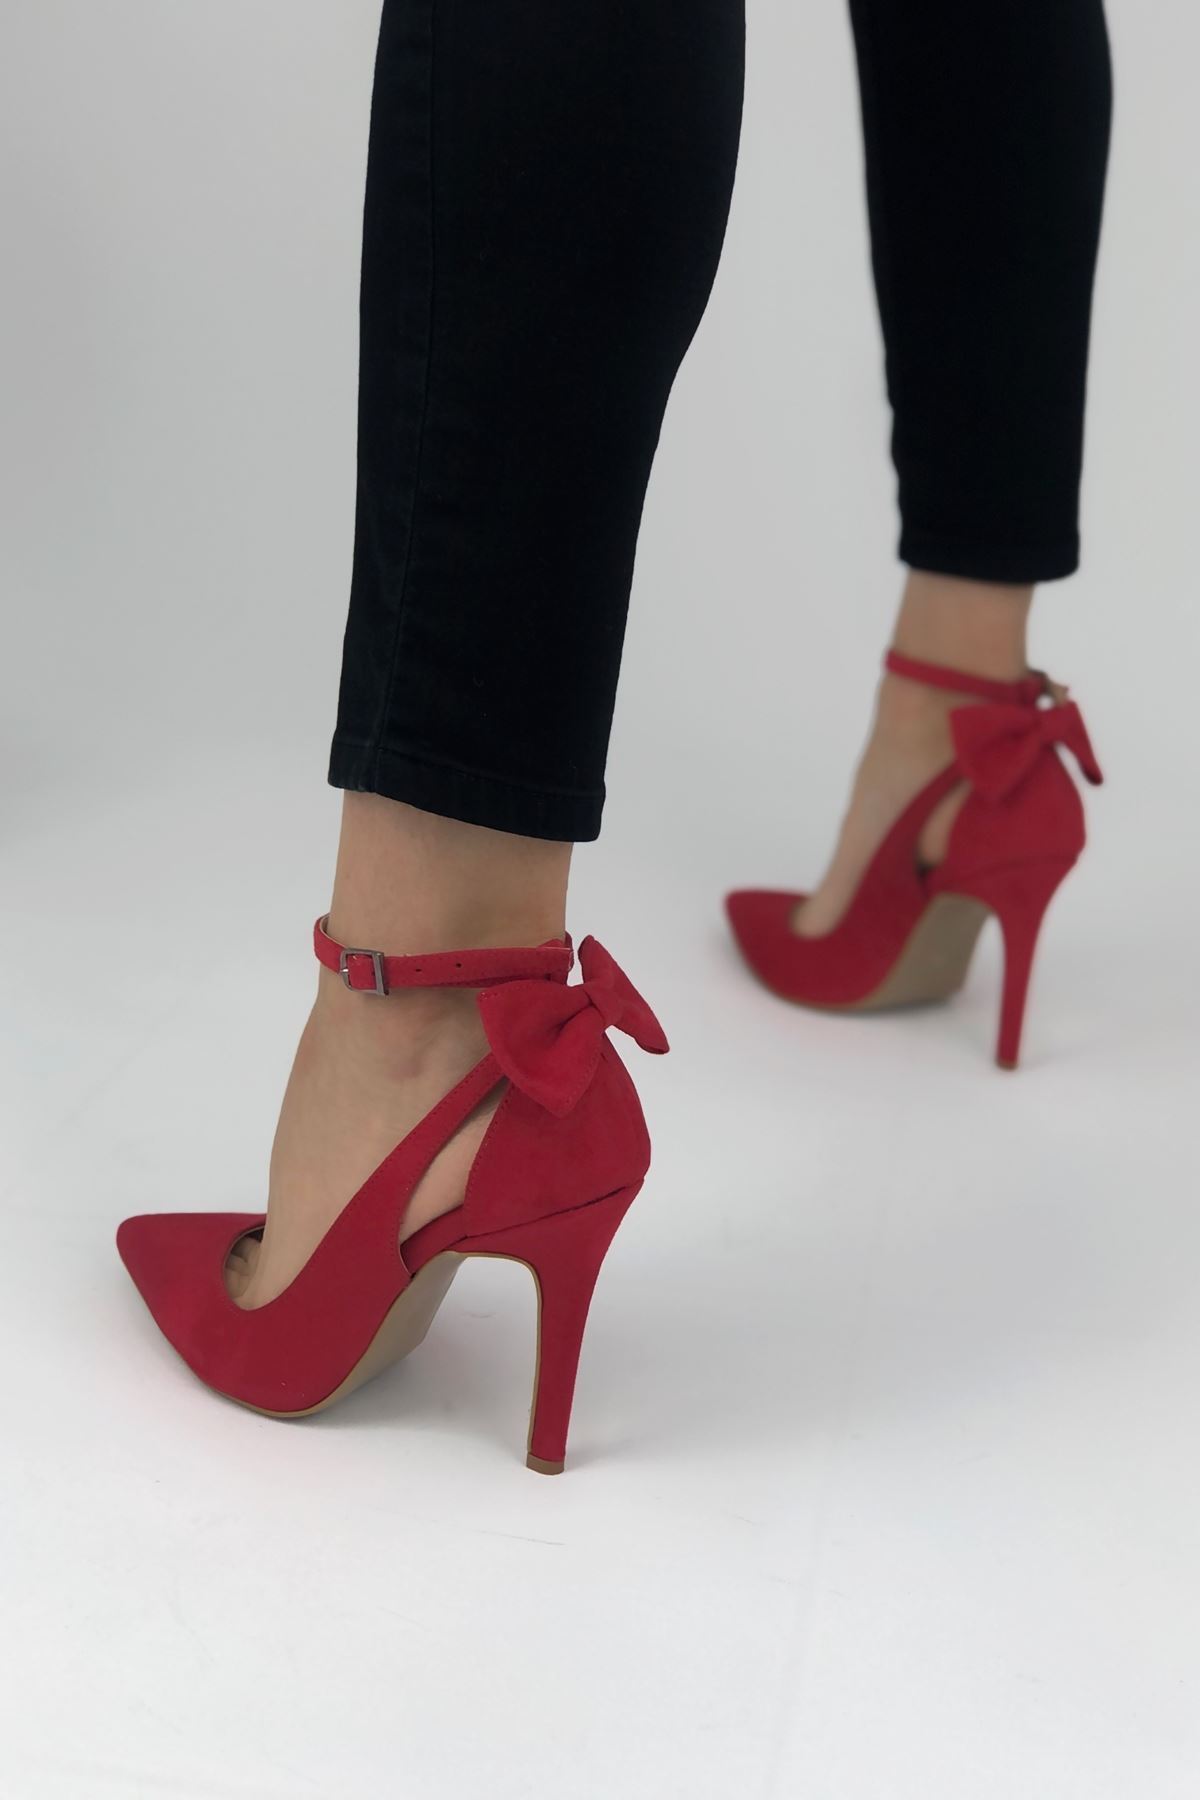 Luther Papyonlu Kırmızı Süet Kadın Ayakkabı